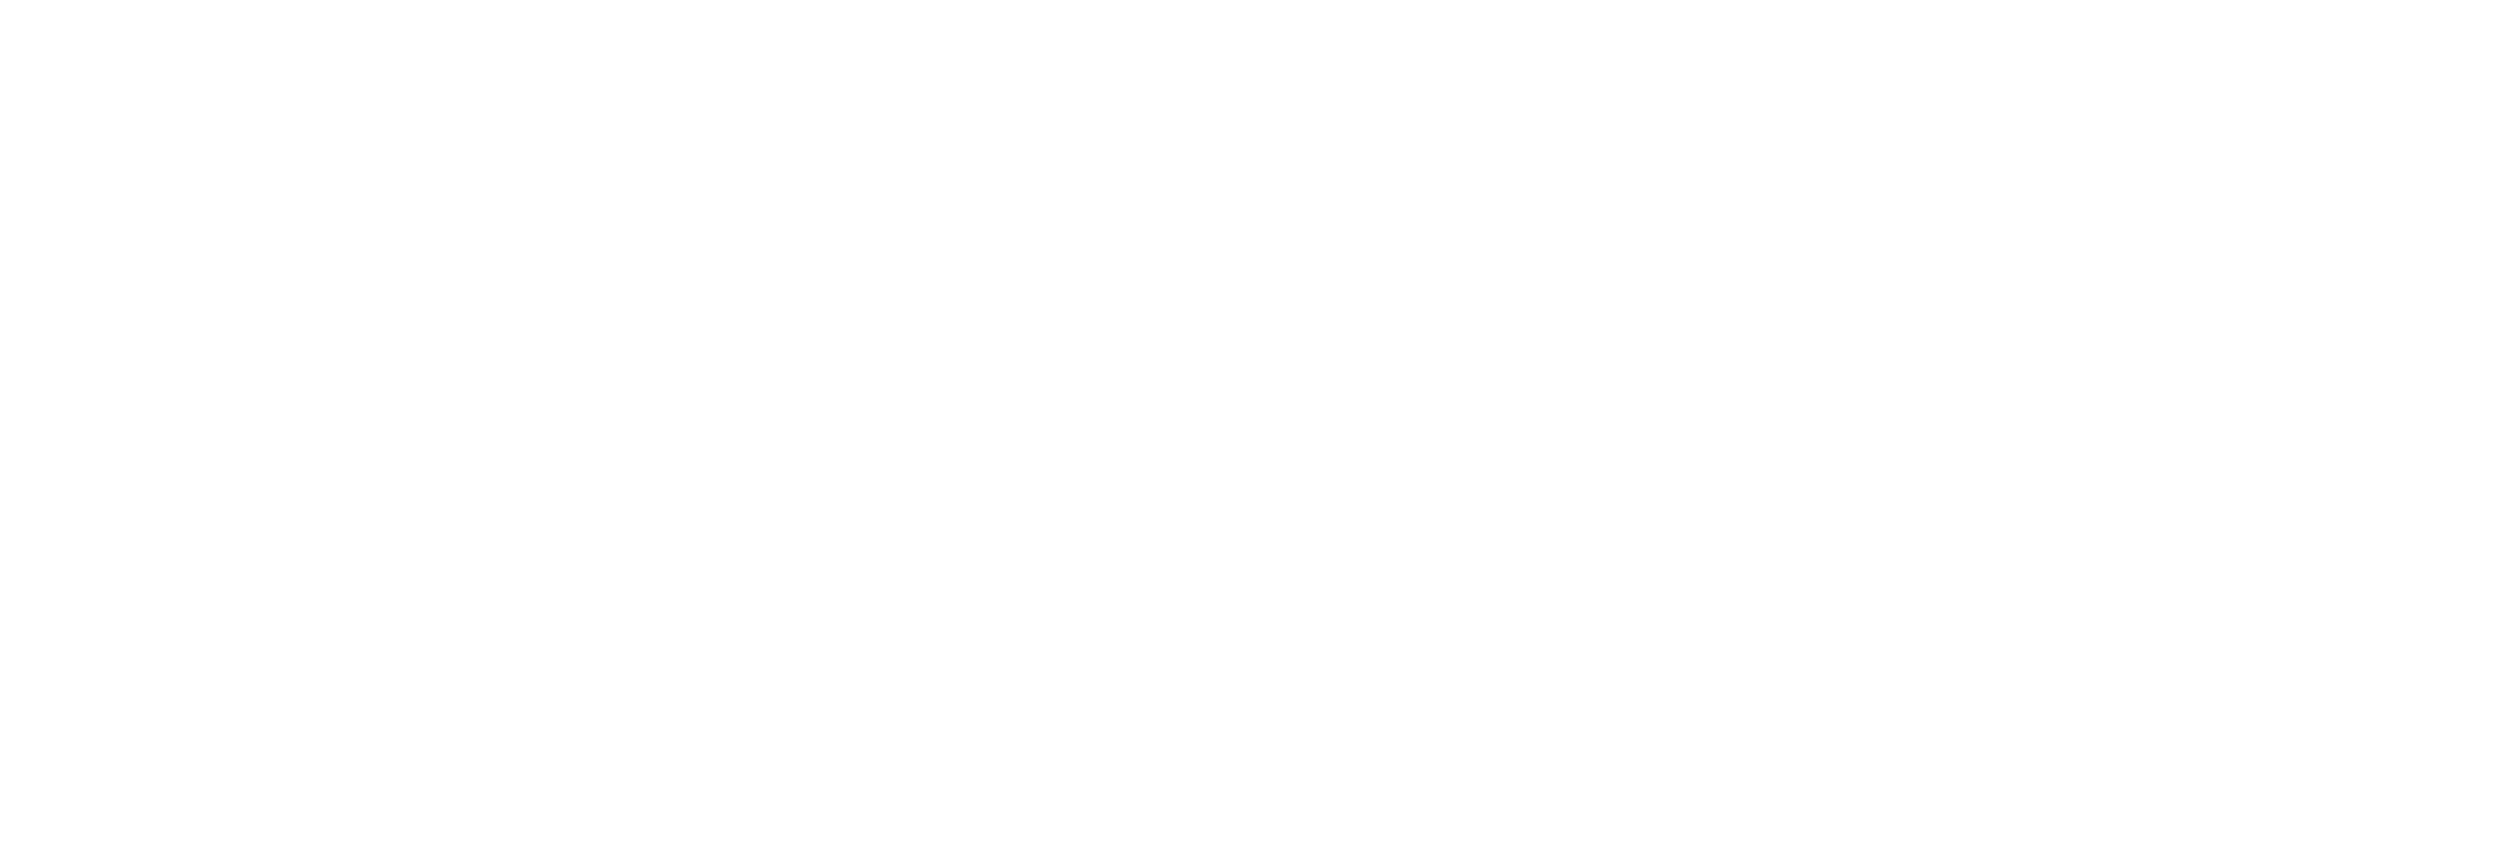 Free Church